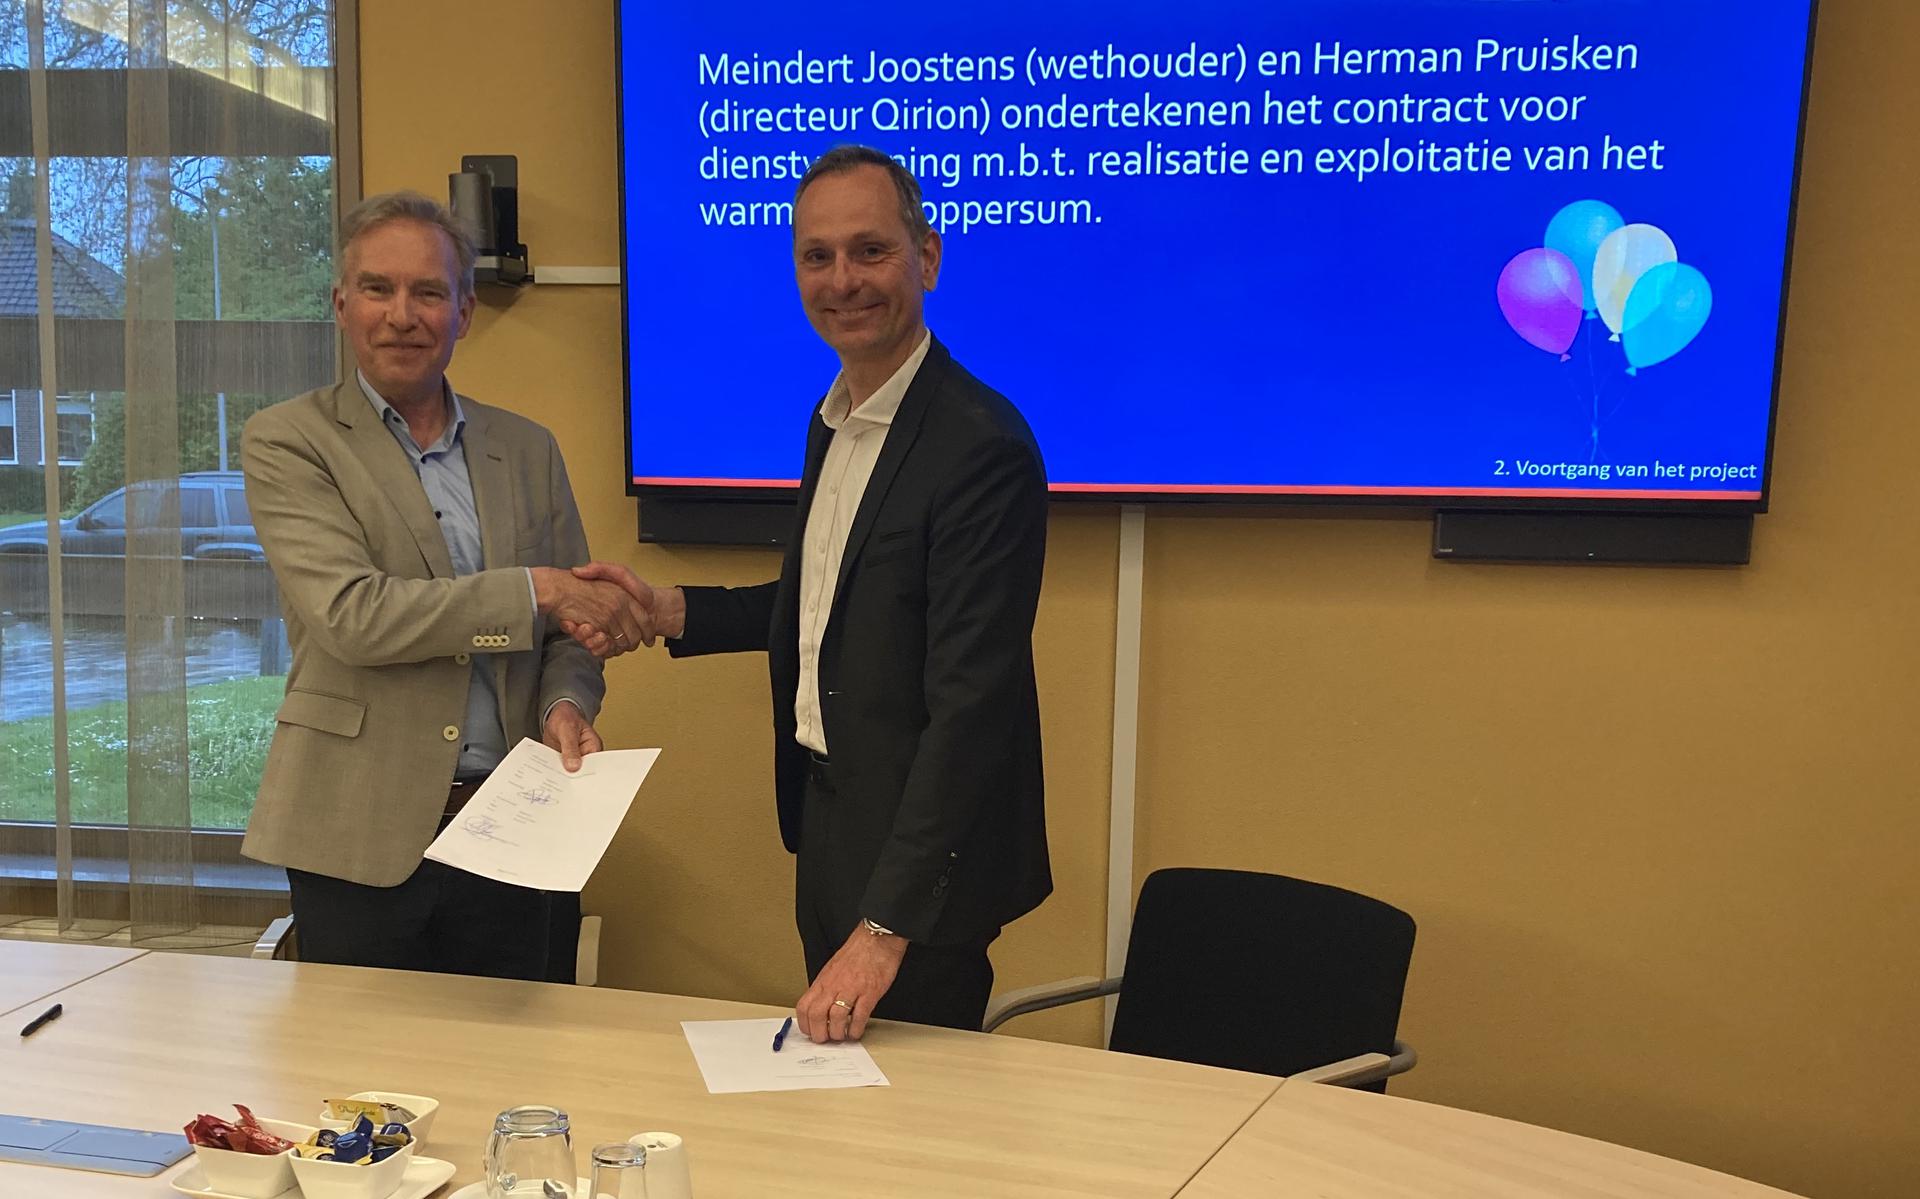 Wethouder Meindert Joostens en directeur Herman Pruisken van Qirion ondertekenden de overeenkomst in het gemeentehuis in Loppersum. Eigen foto